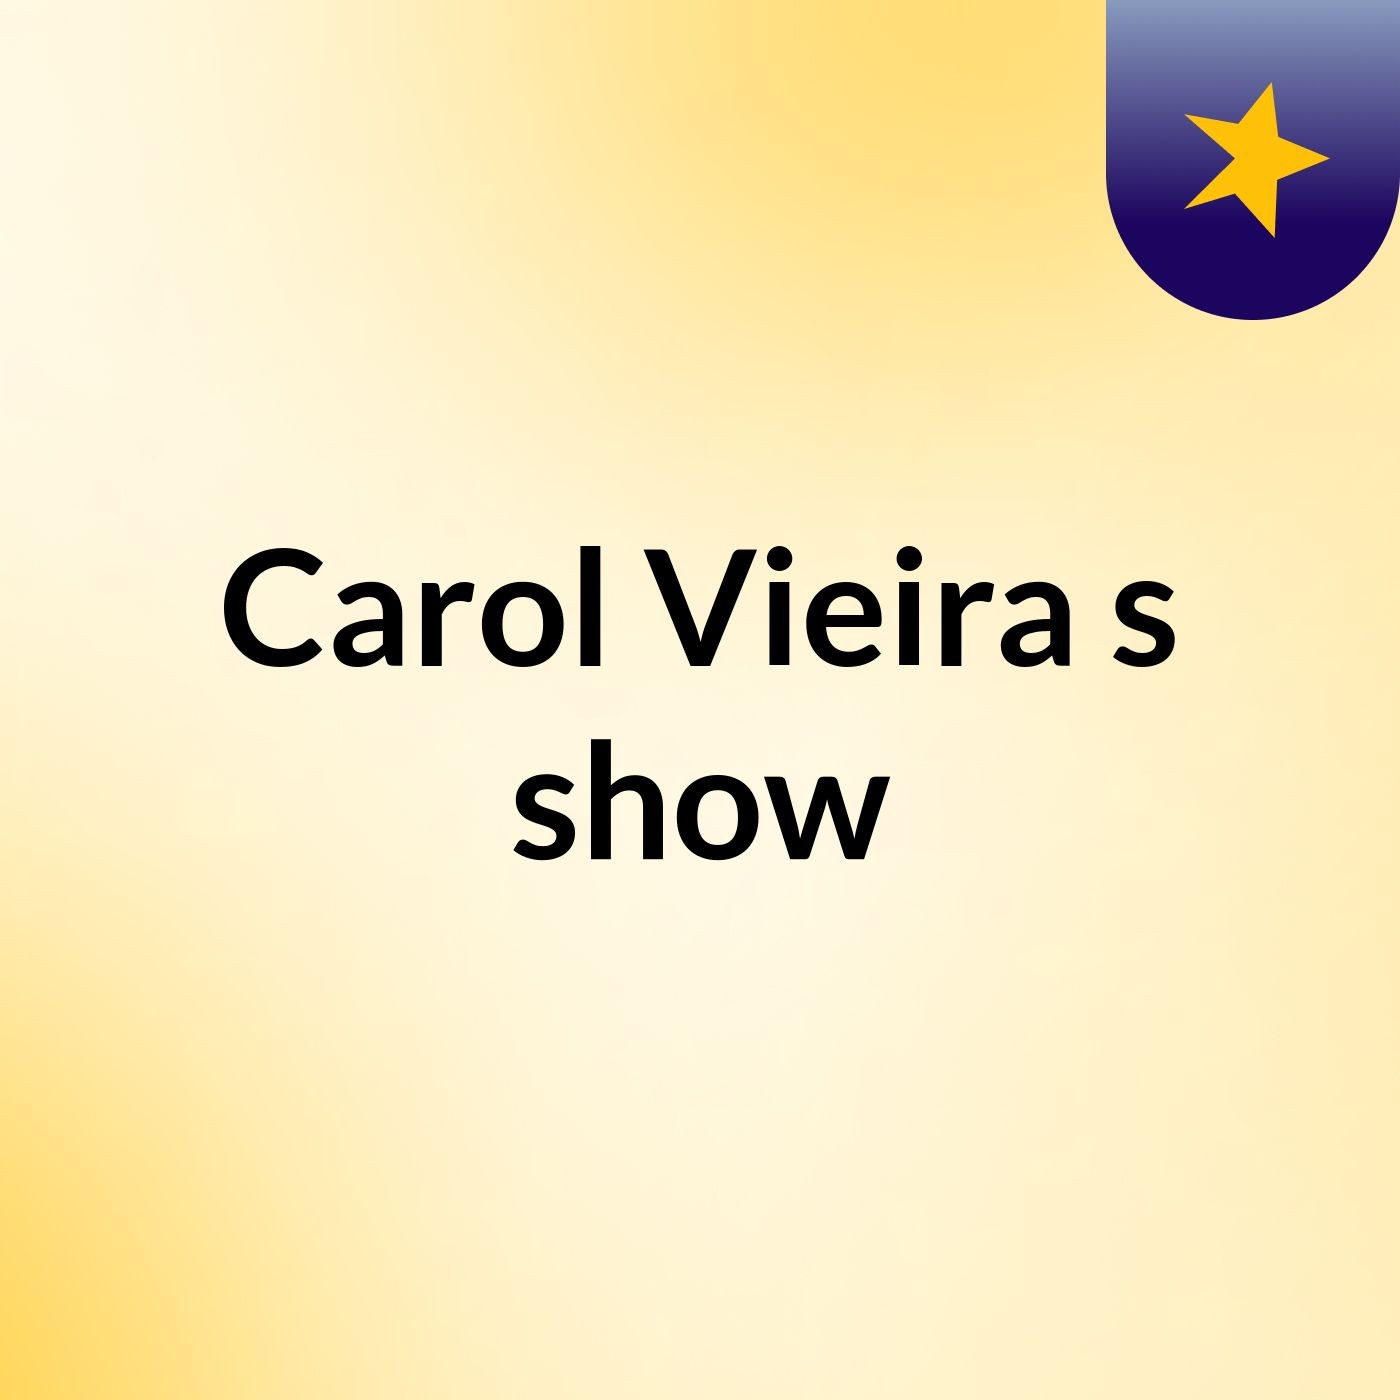 Carol Vieira's show